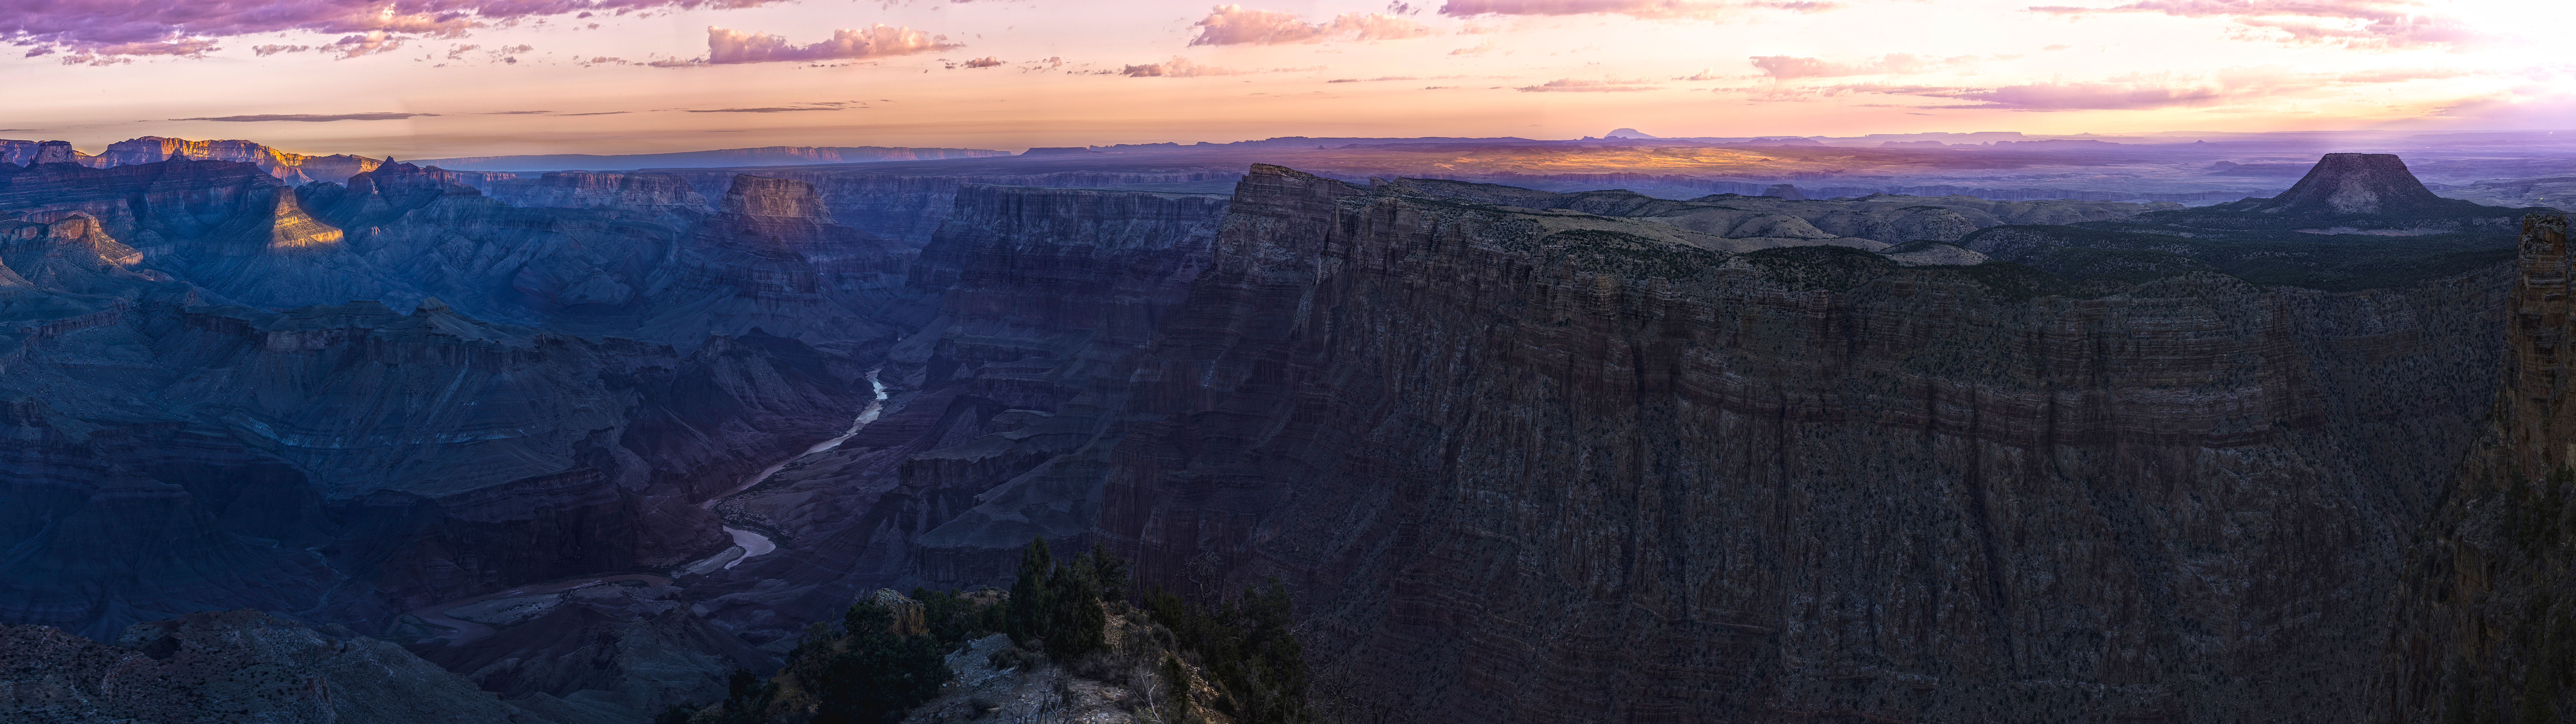 Grand Canyon 4k Dual Monitor Wallpaper Themes10 Win